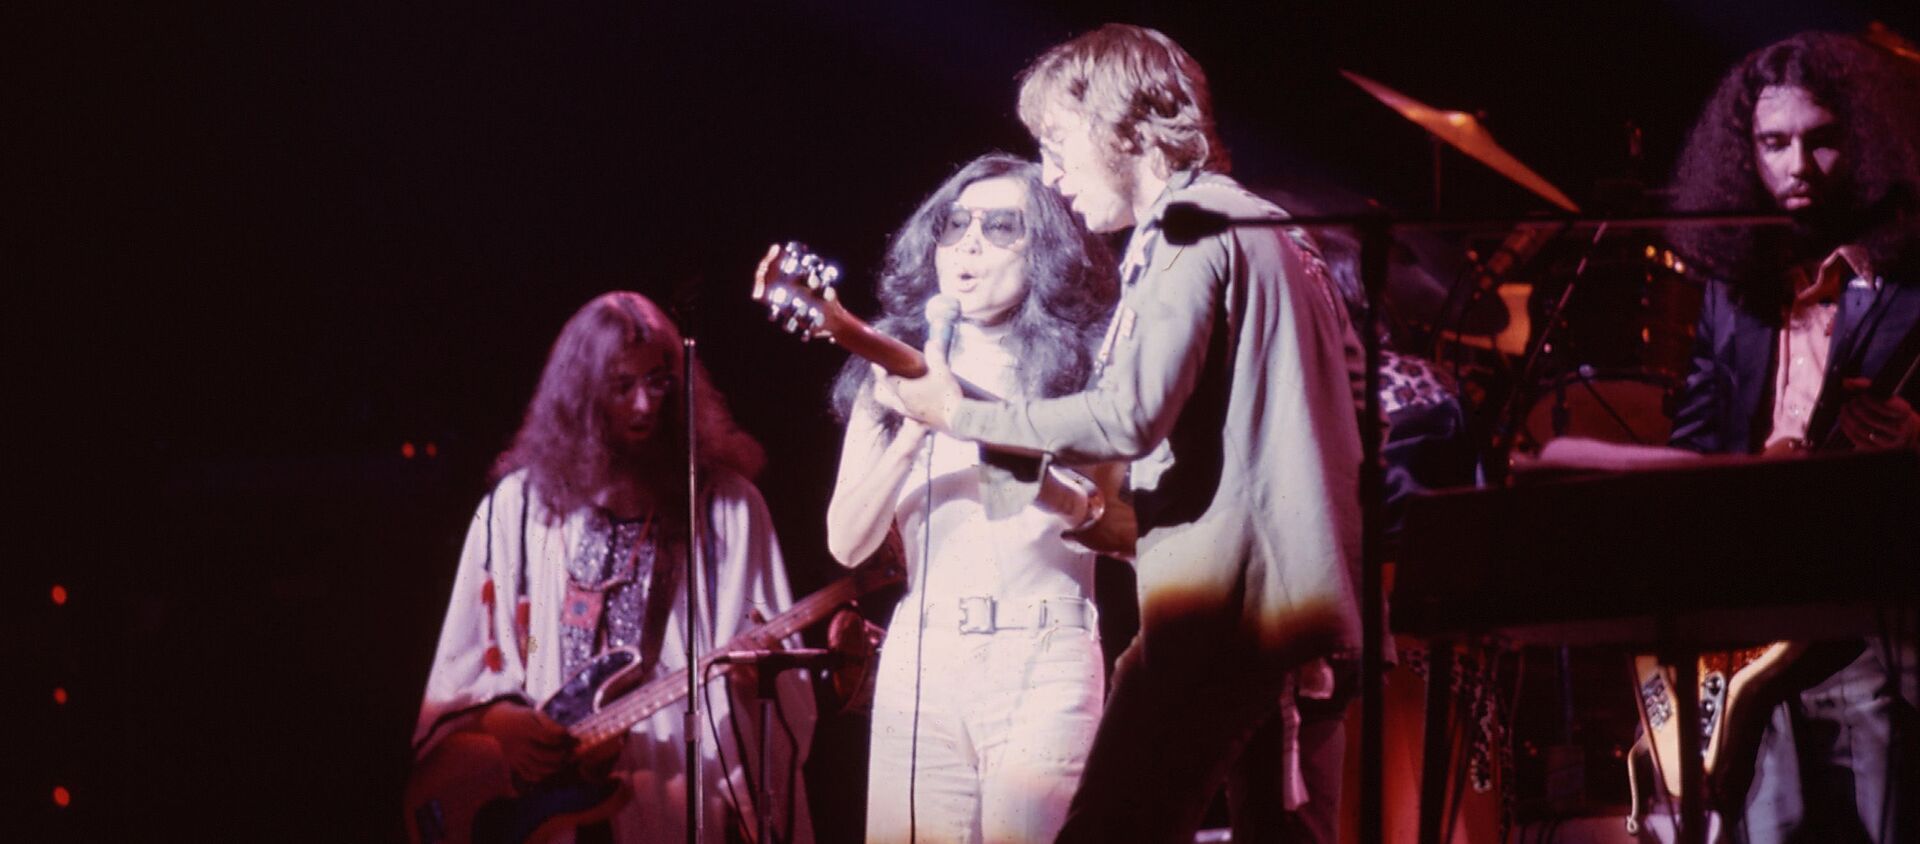 John Lennon junto a su esposa, Yoko Ono - Sputnik Mundo, 1920, 08.10.2020